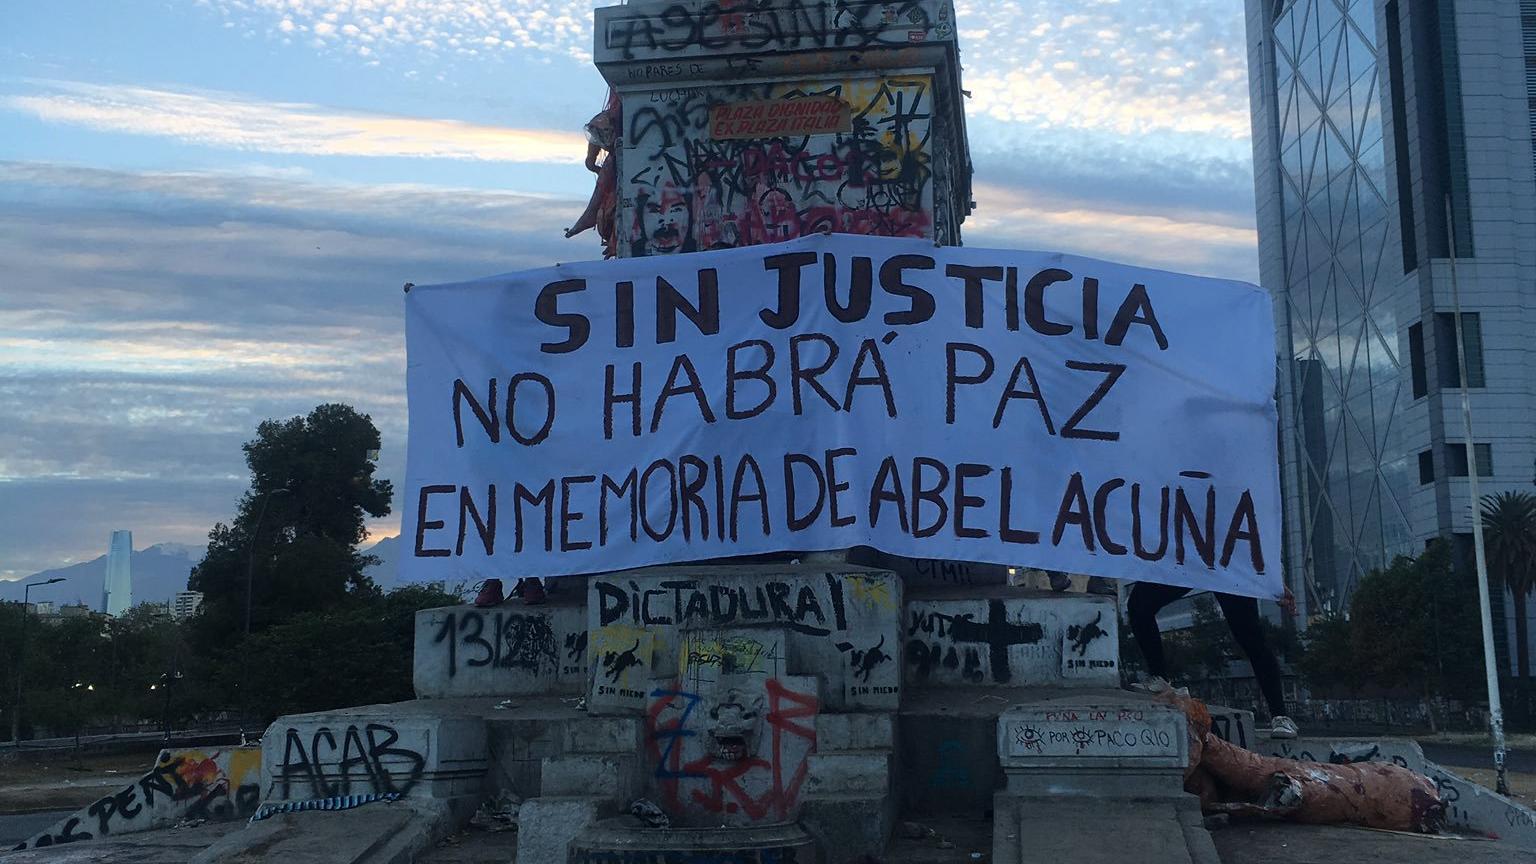 Las protestas del viernes dejaron un total de 268 personas detenidas y 26 manifestantes heridos más la muerte de Abel Acuña.